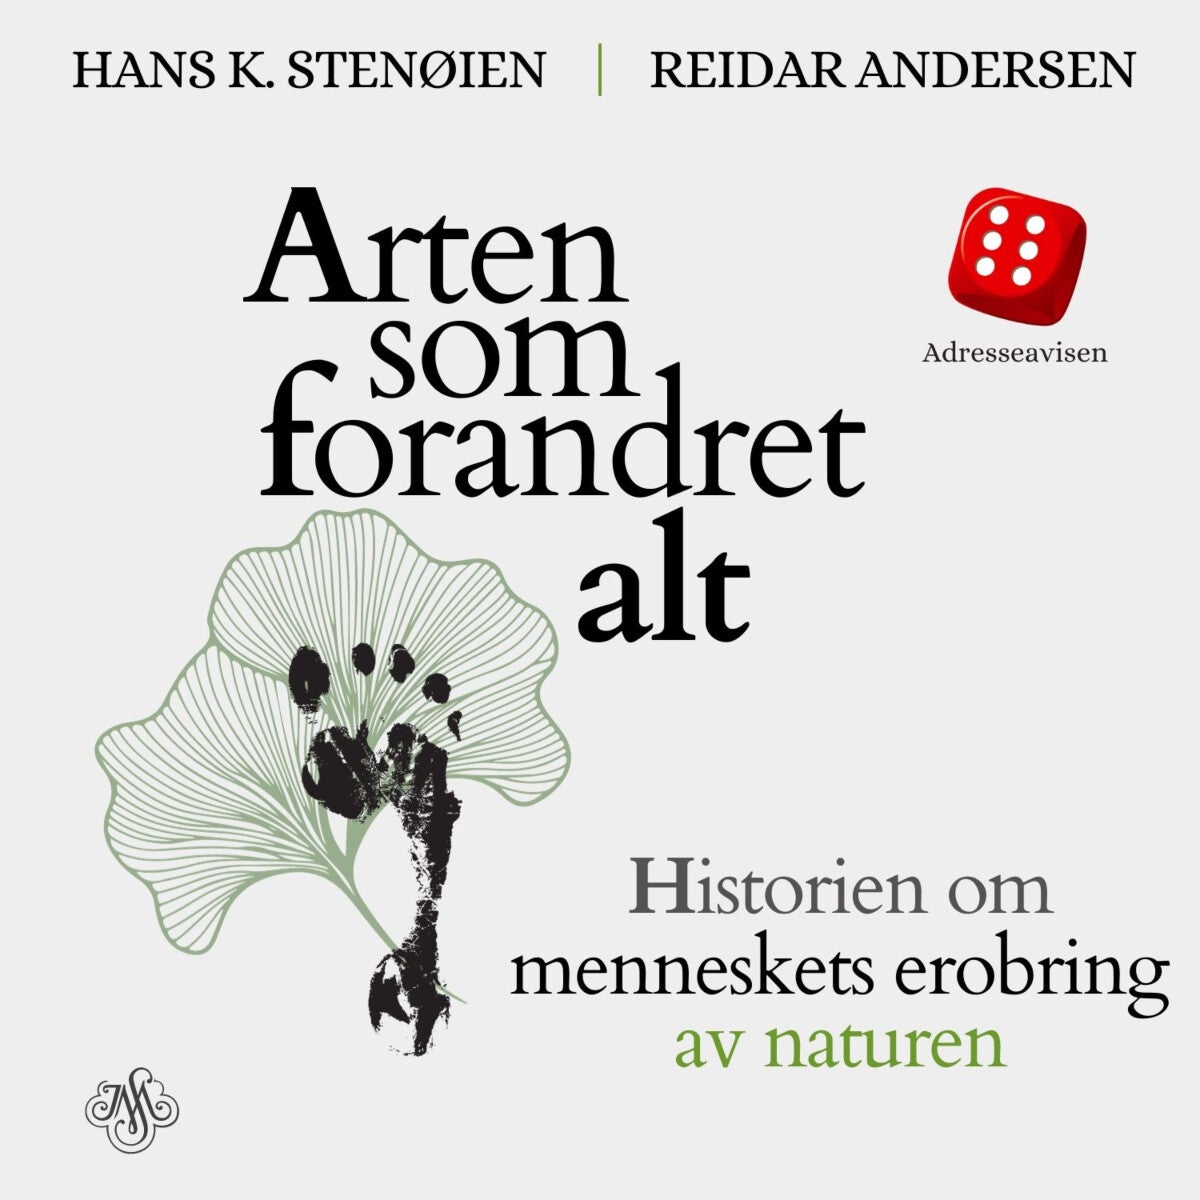 Arten som forandret alt av Reidar Andersen, Hans K. Stenøien